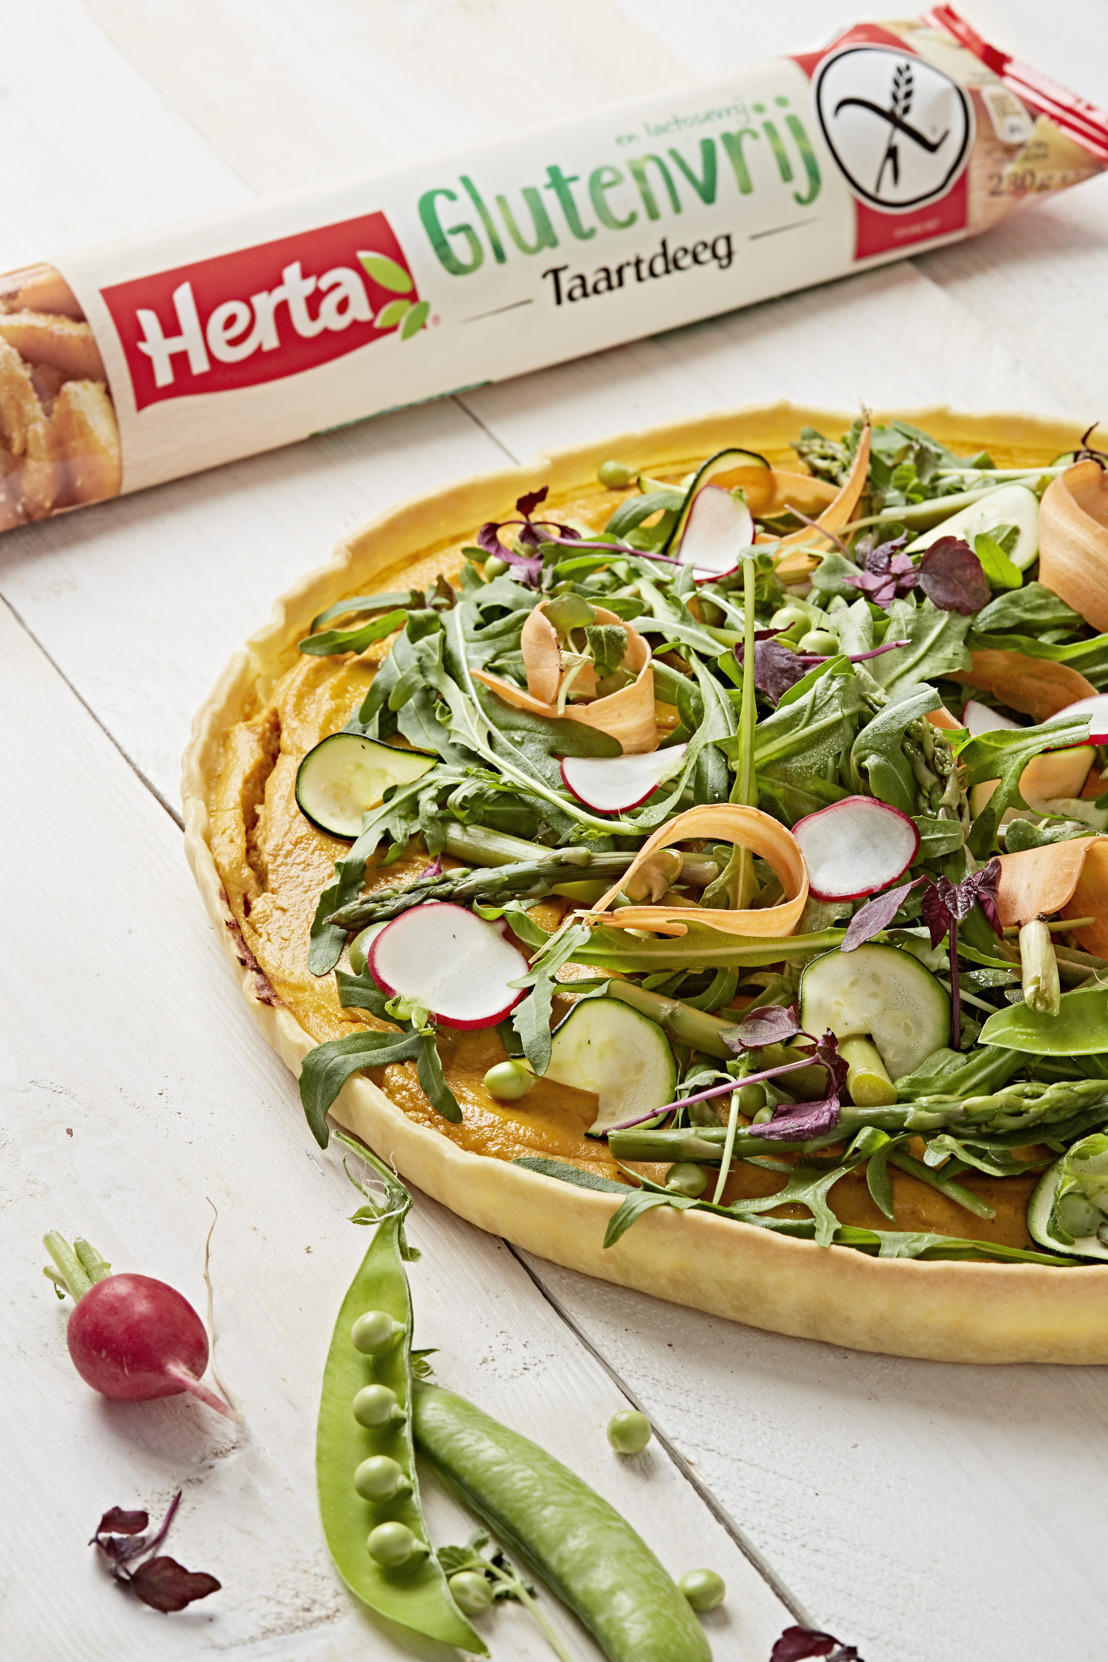 Nieuw in de versafdeling van uw supermarkt: het allereerste pizza- en taartdeeg zonder gluten en lactose van Herta!